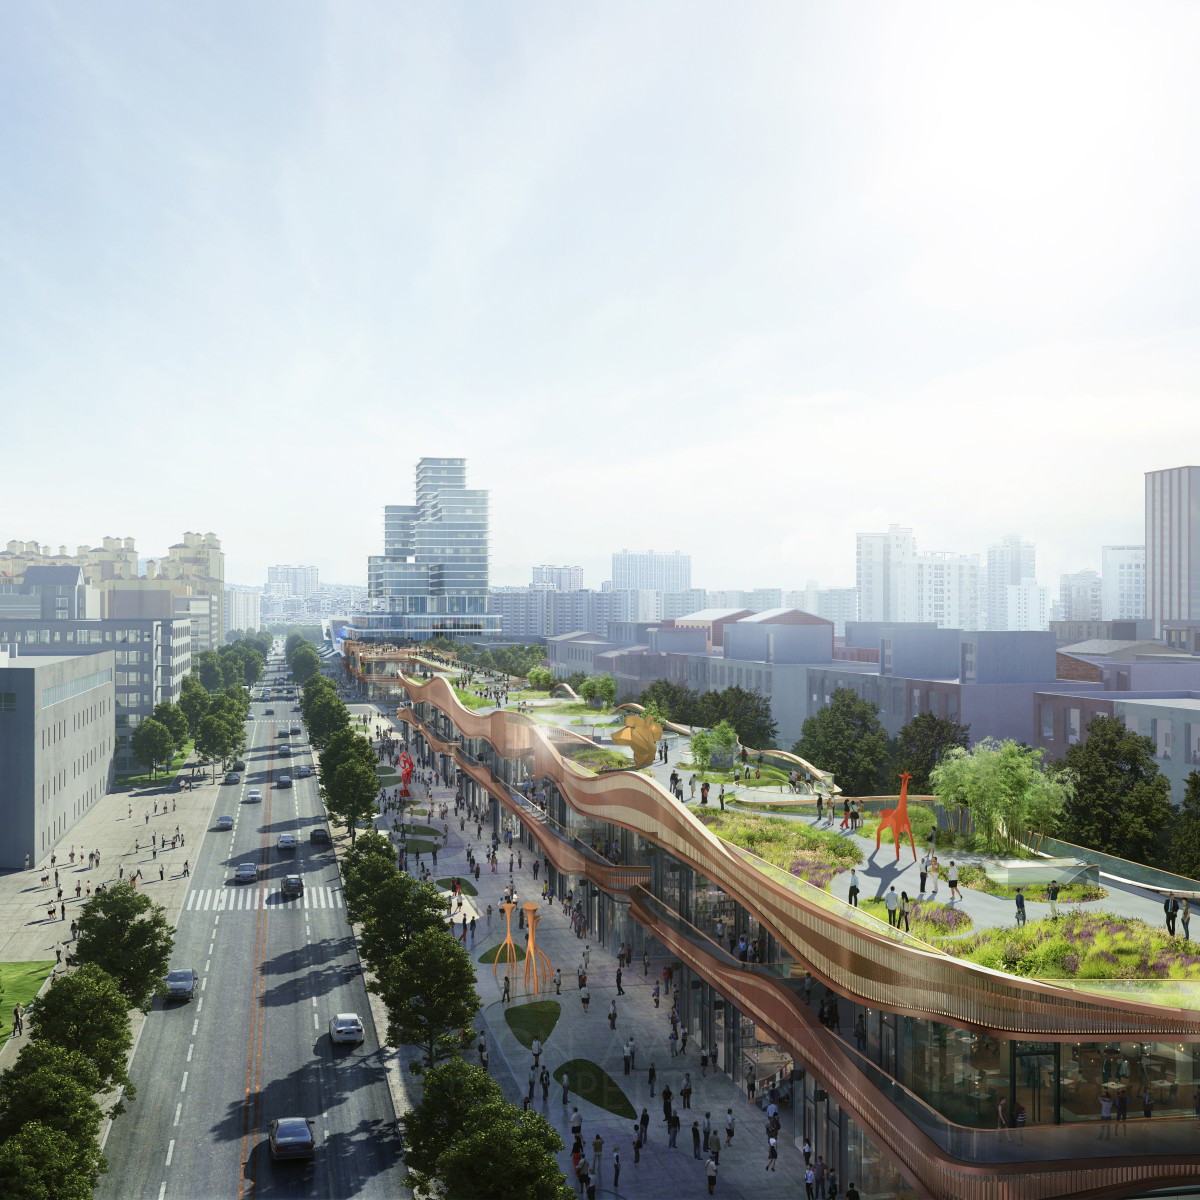 Chengdu Hyperlane Park Retail Architecture by Aedas Platinum Urban Planning and Urban Design Award Winner 2023 